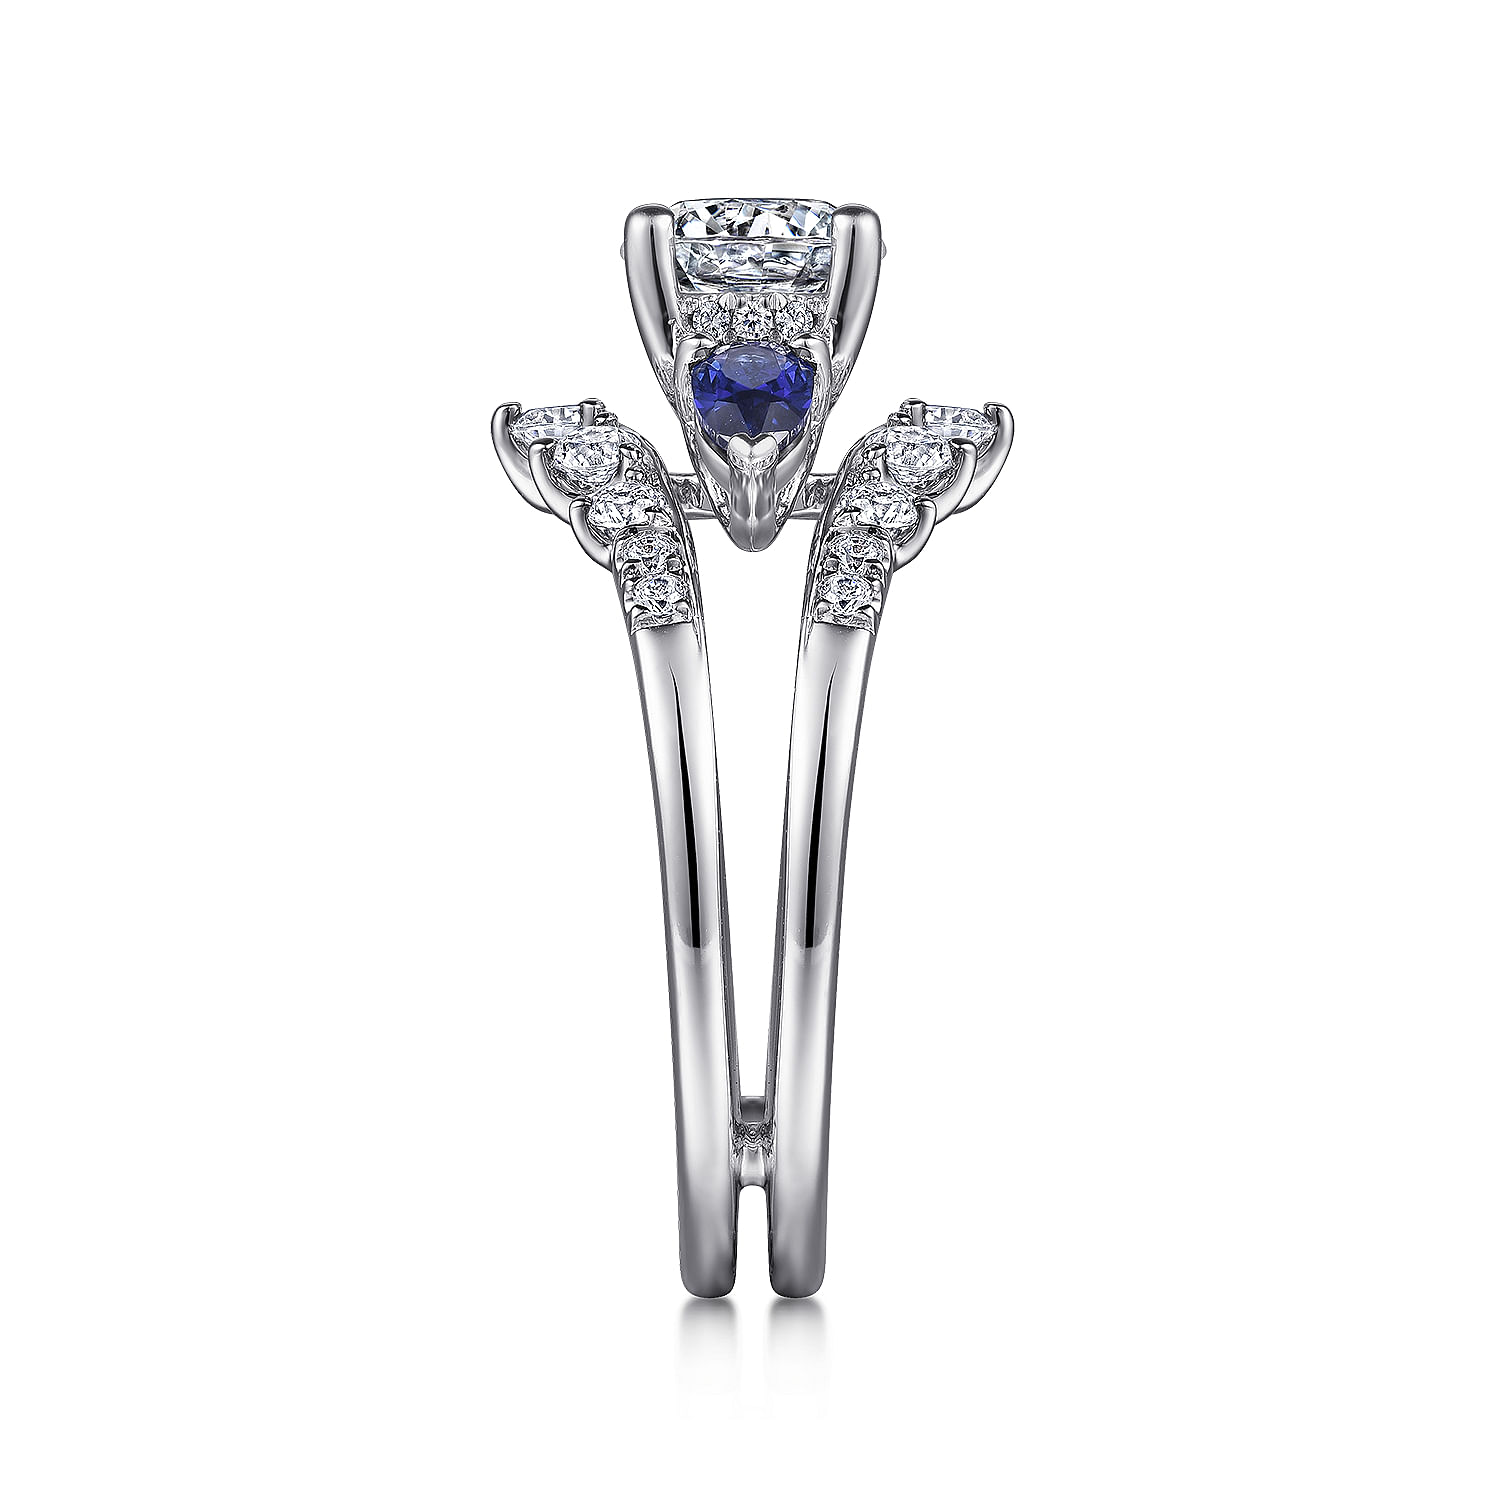 14K White Gold Round Three Stone Sapphire and Diamond Engagement Ring